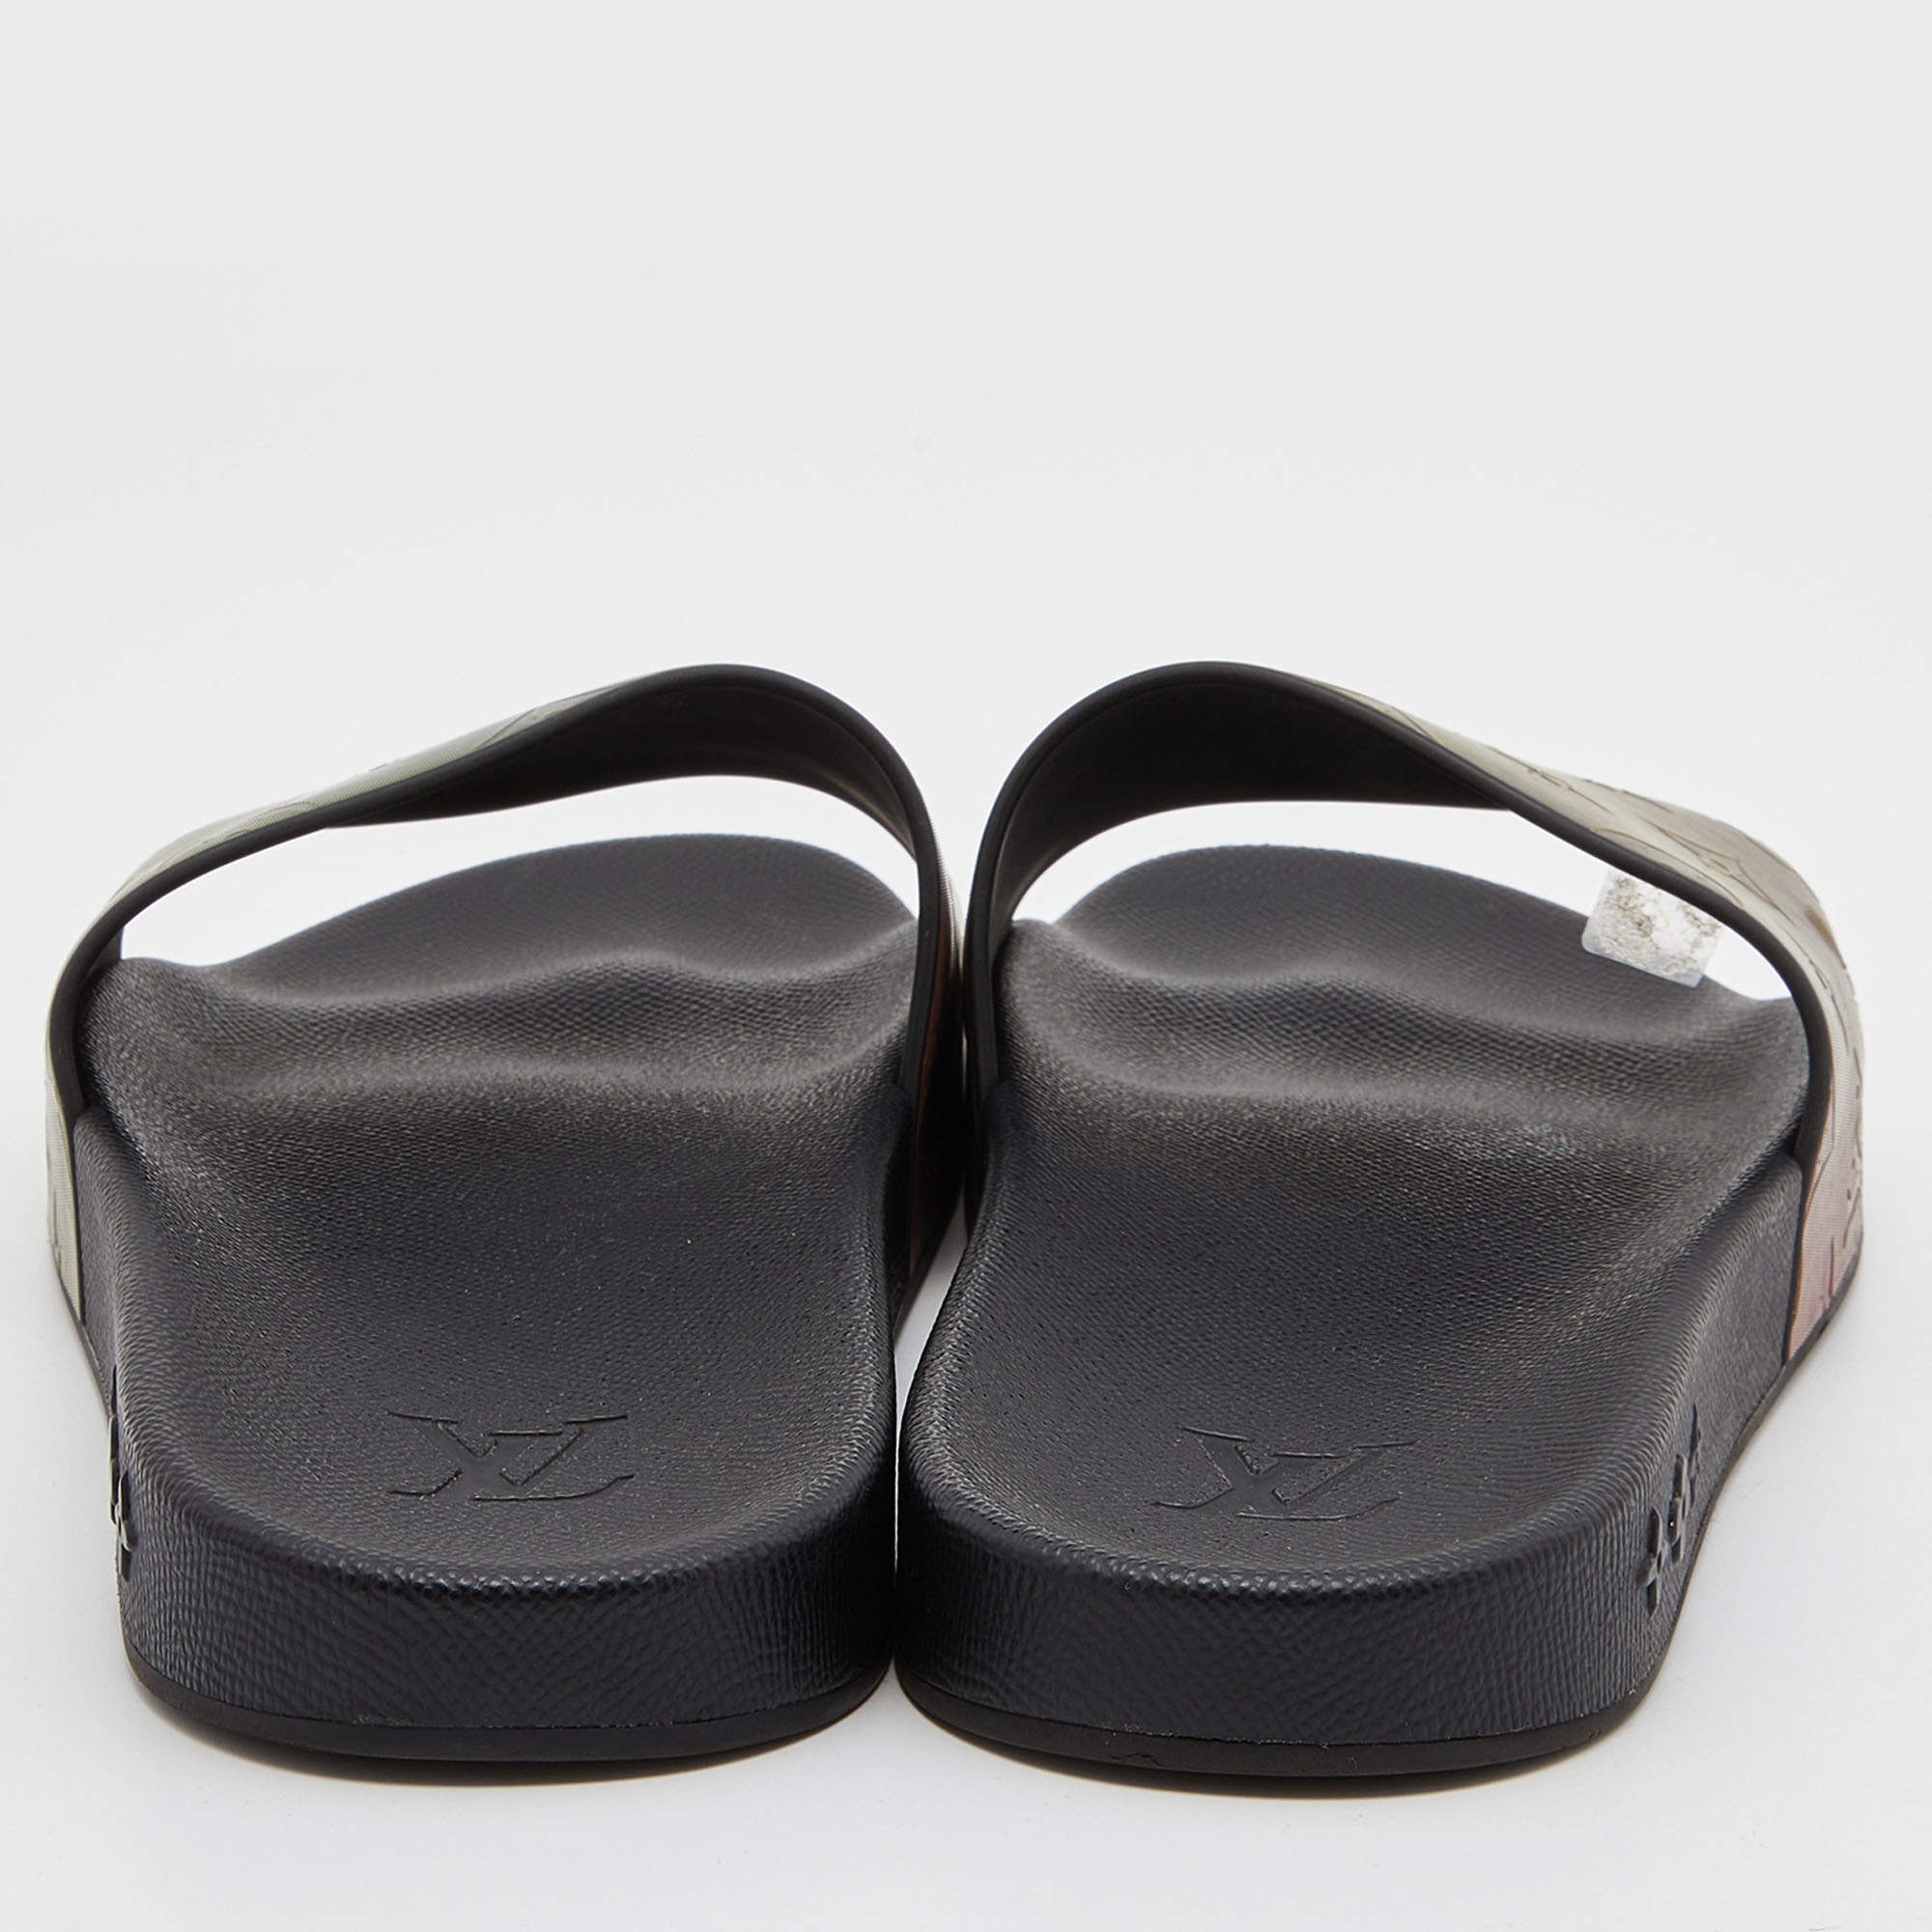 Waterfront sandals Louis Vuitton Black size 43 EU in Rubber - 32260545